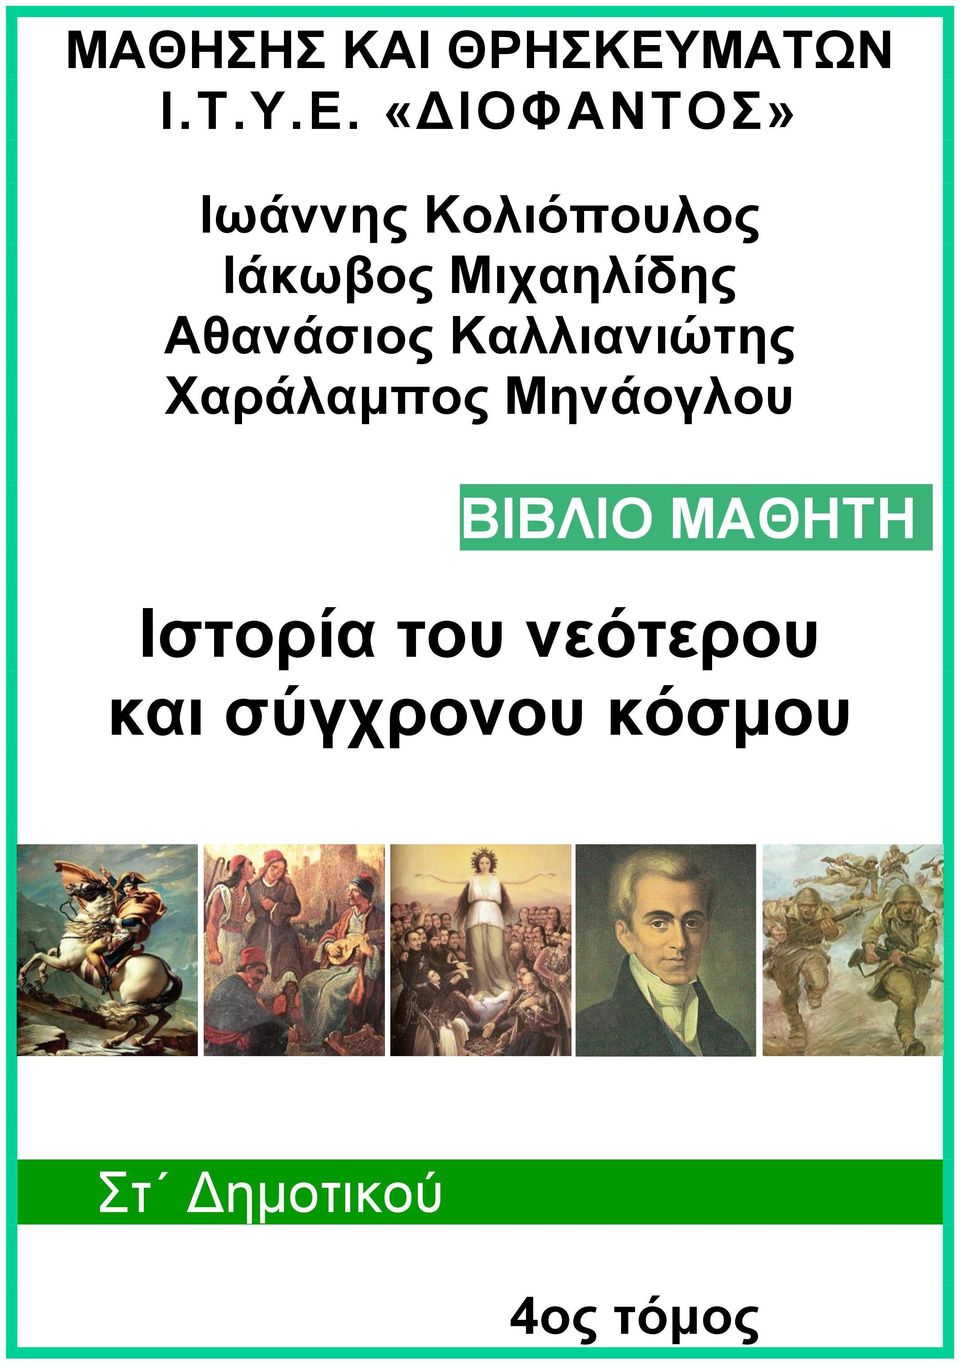 «ΔΙΟΦΑΝΤΟΣ» Ιωάννης Κολιόπουλος Ιάκωβος Μιχαηλίδης